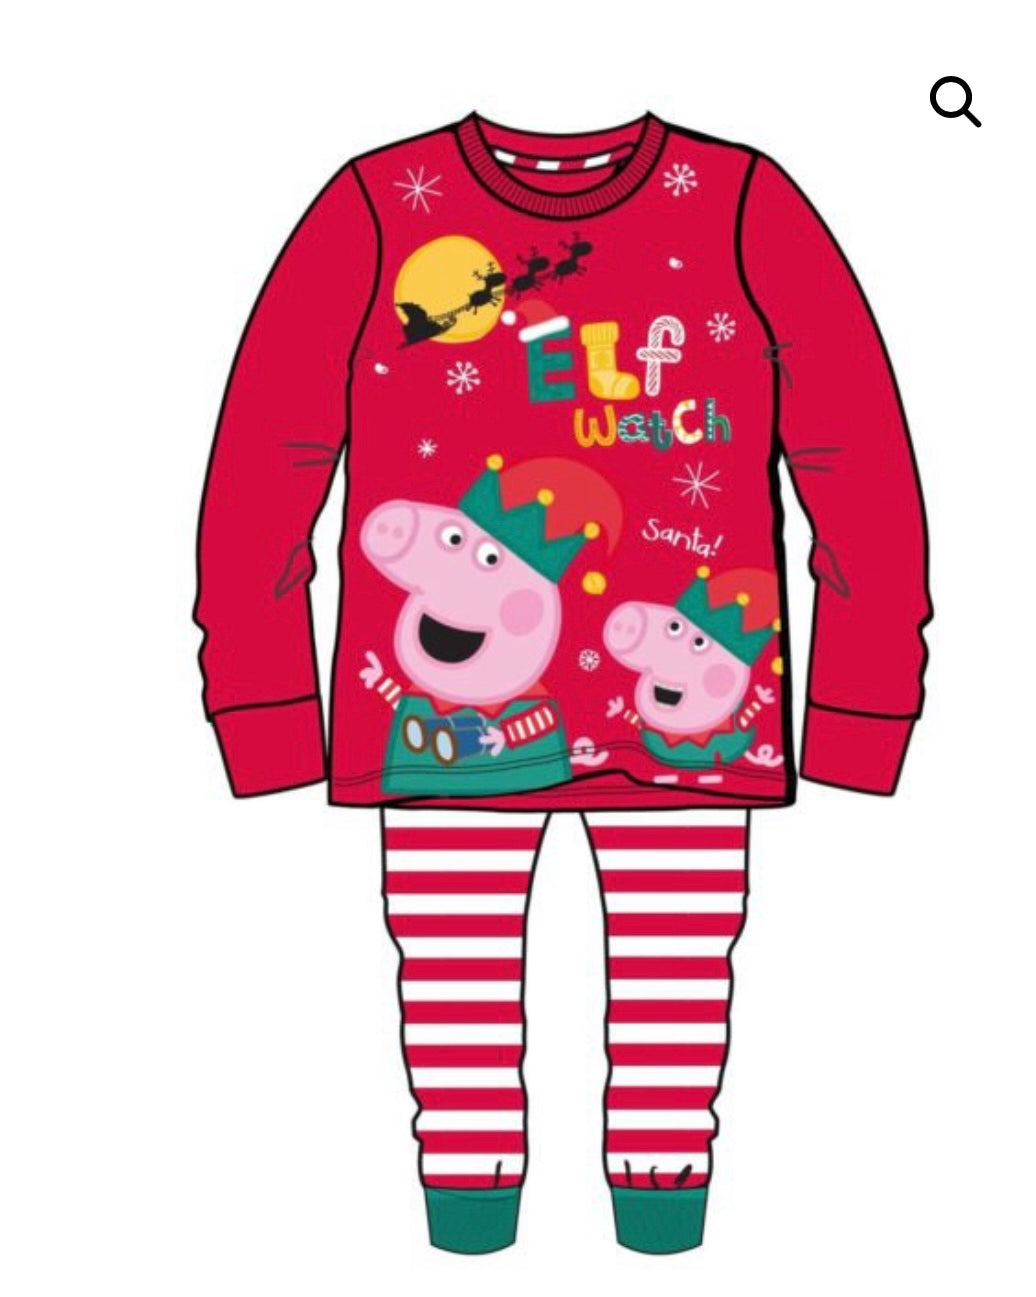 Peppa pig Christmas pyjamas